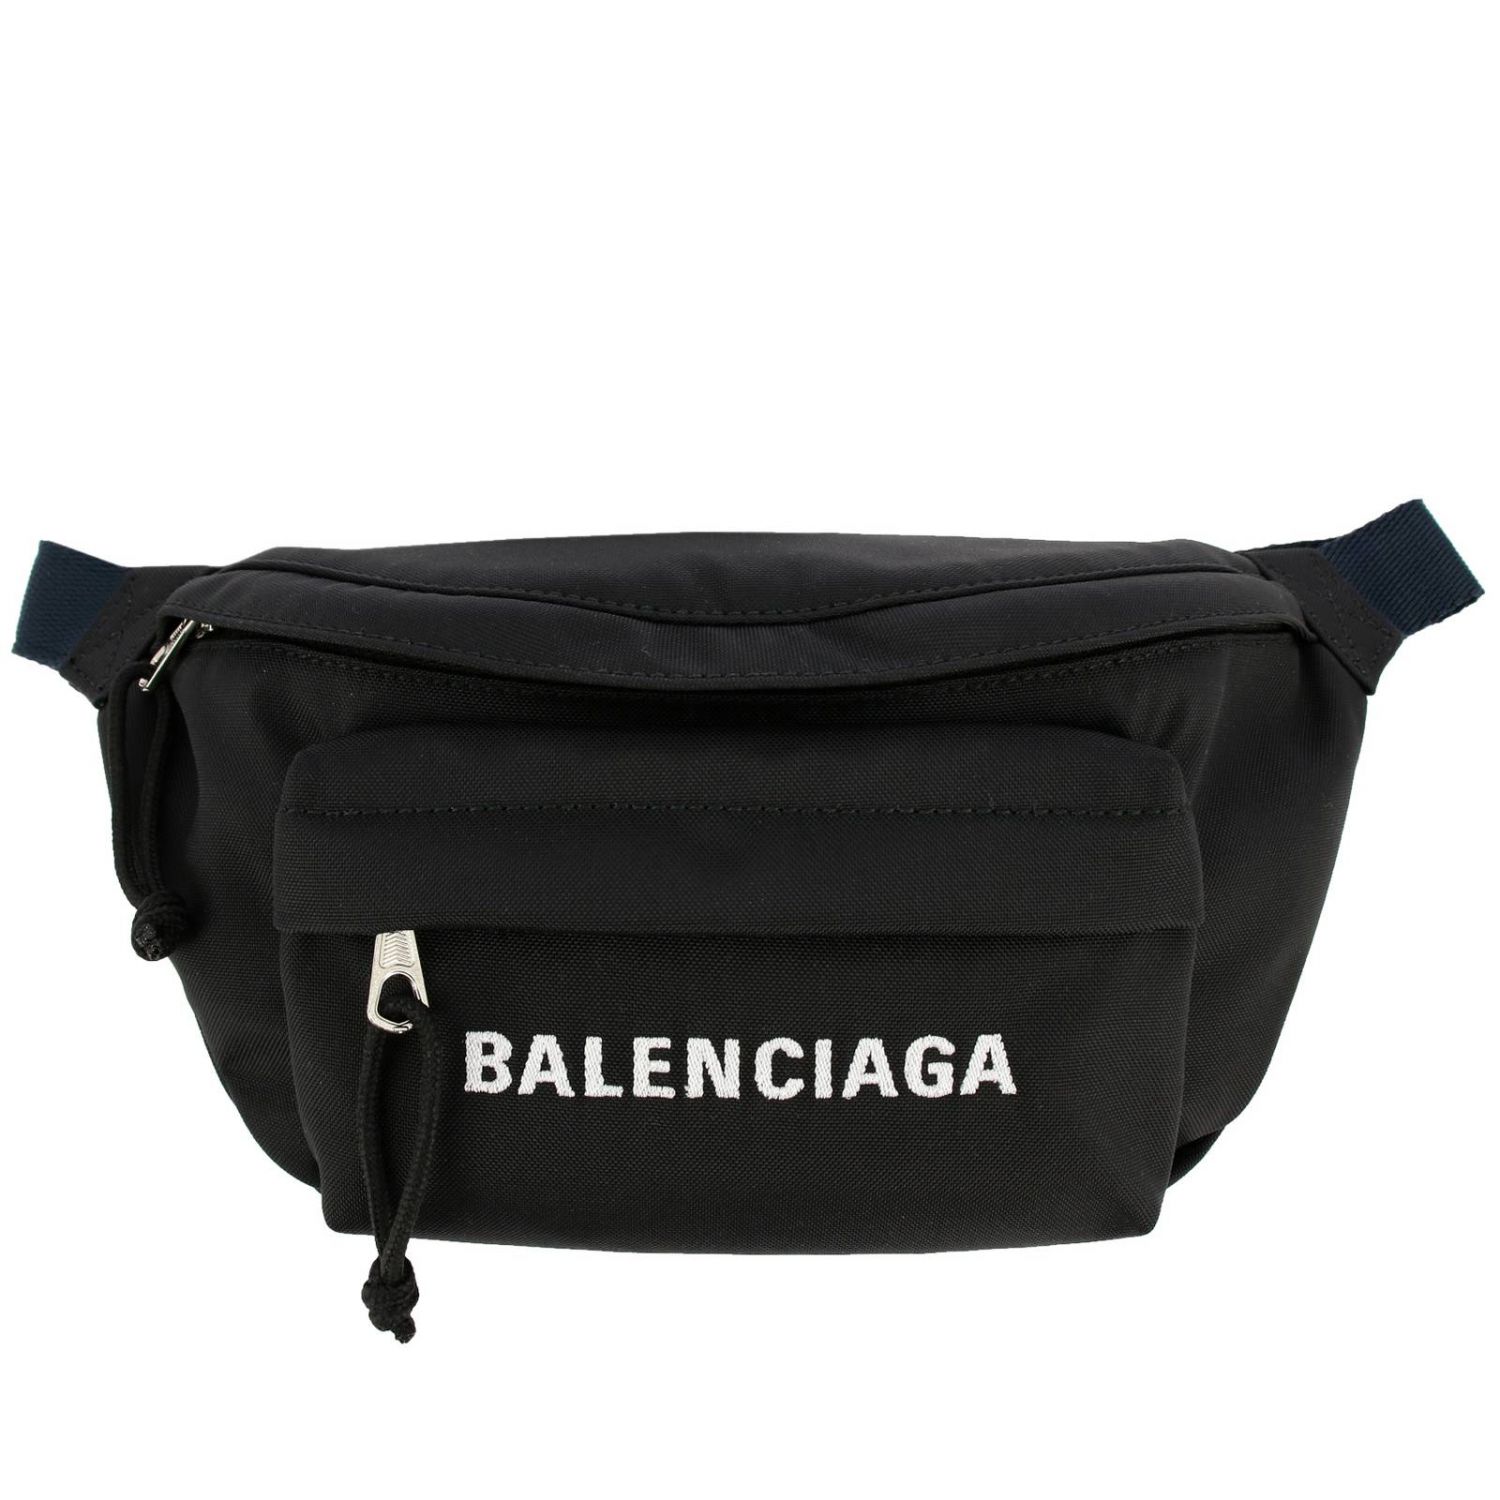 BALENCIAGA: Wheel belt bag in nylon with logo - Black | Balenciaga 